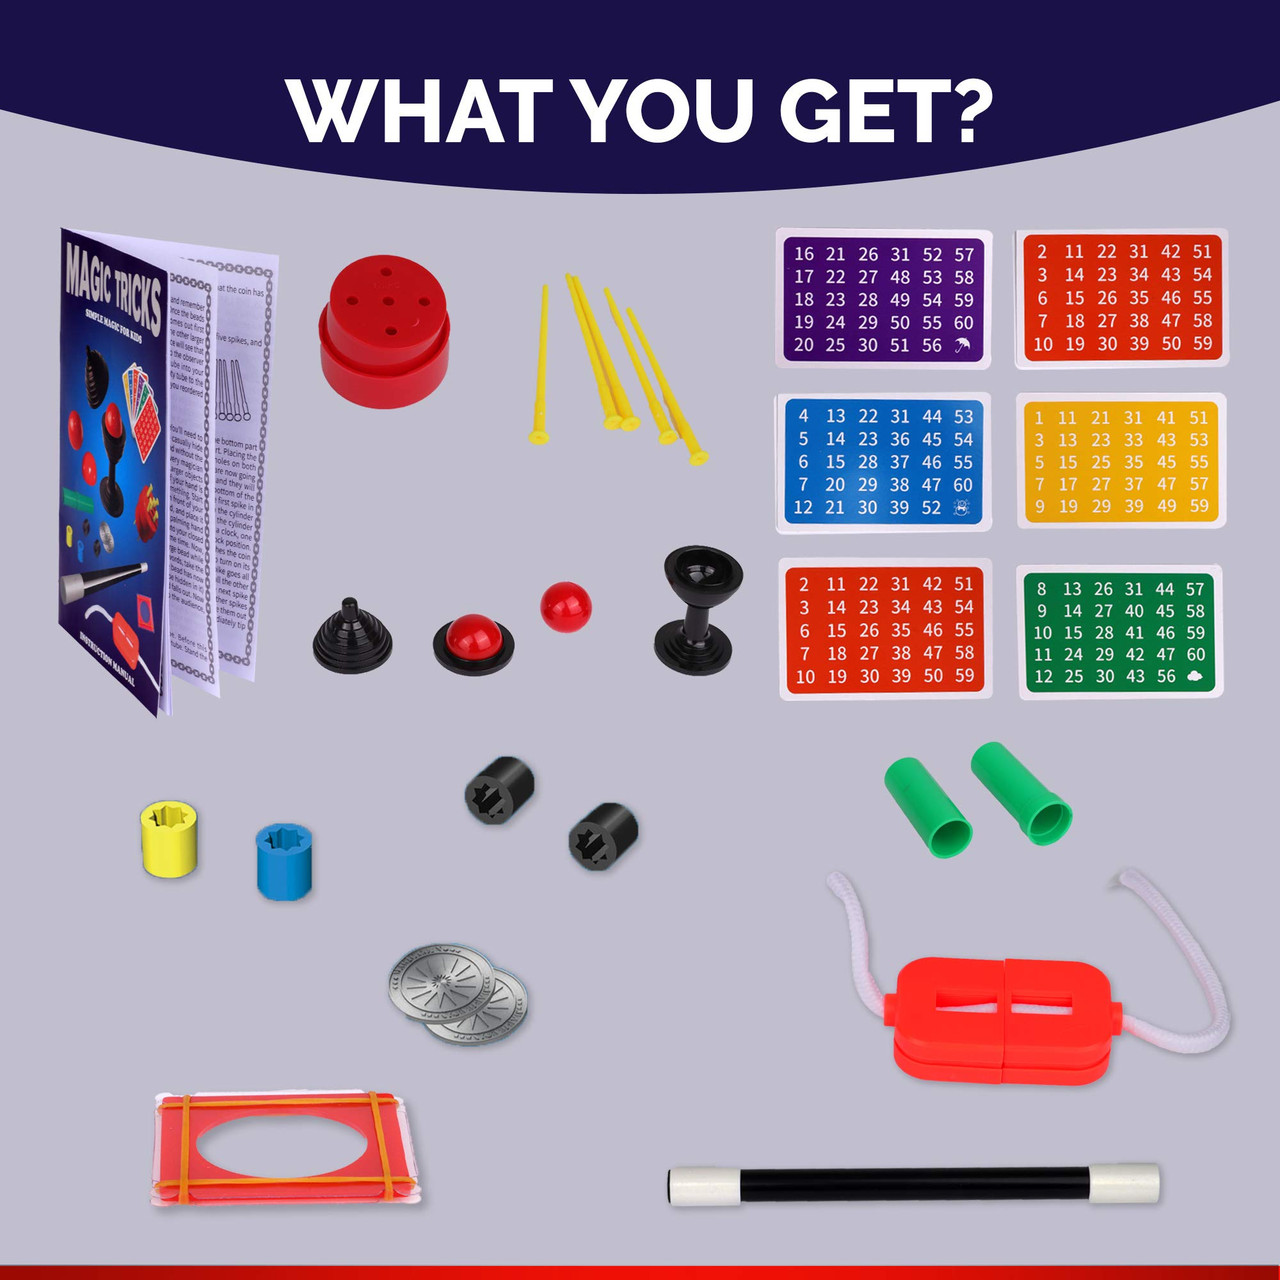 Playkidz Magic Trick for Kids Set 2- Magic Set with Over 35 Tricks